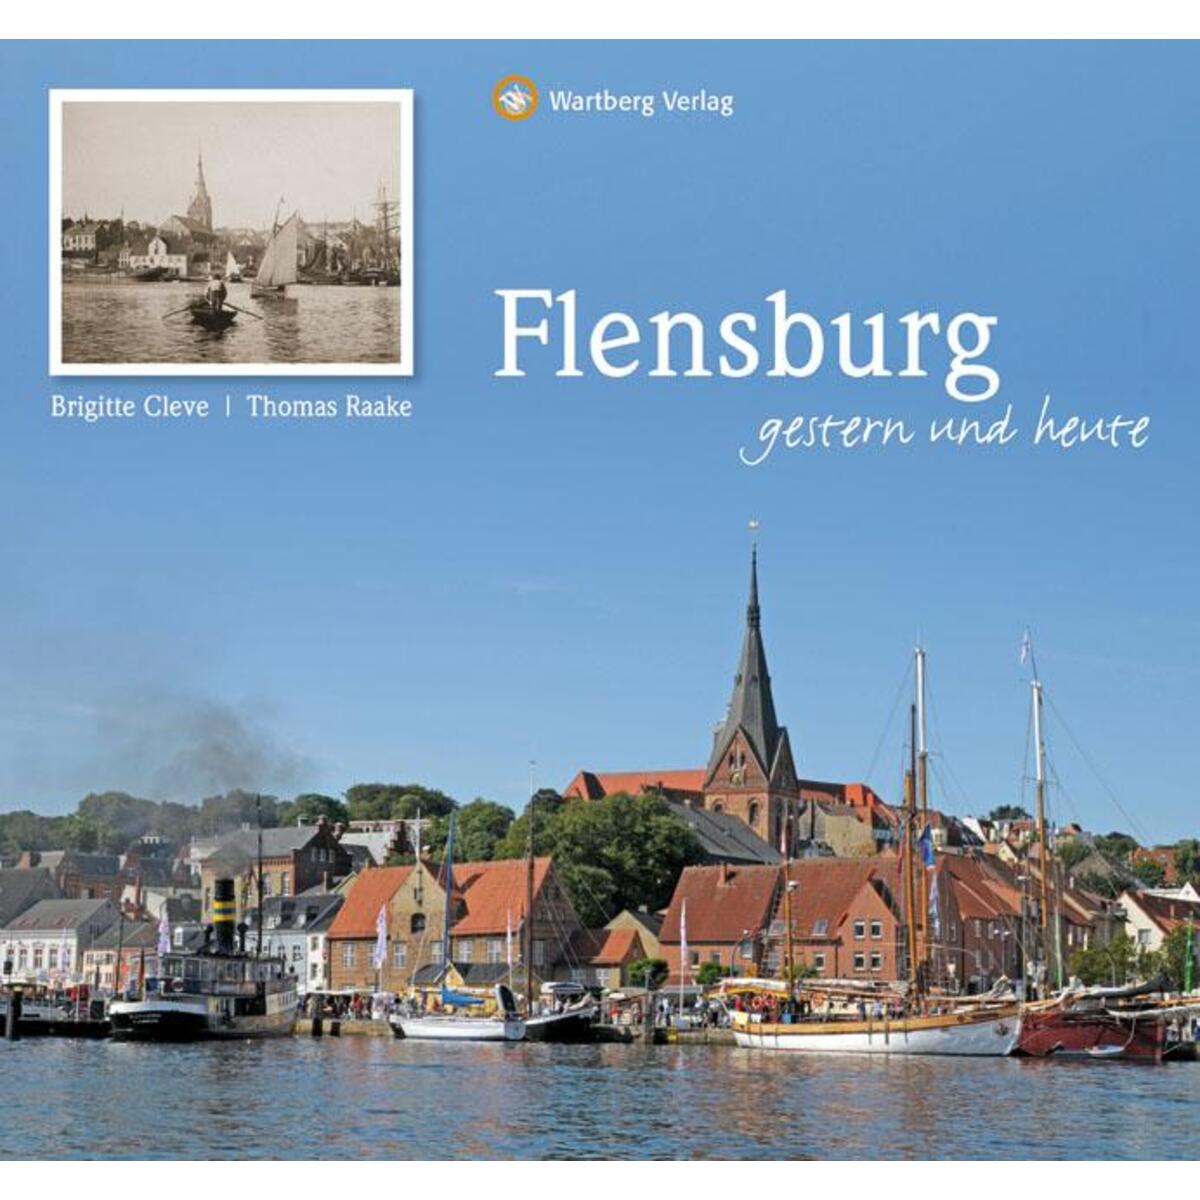 Flensburg - gestern und heute von Wartberg Verlag